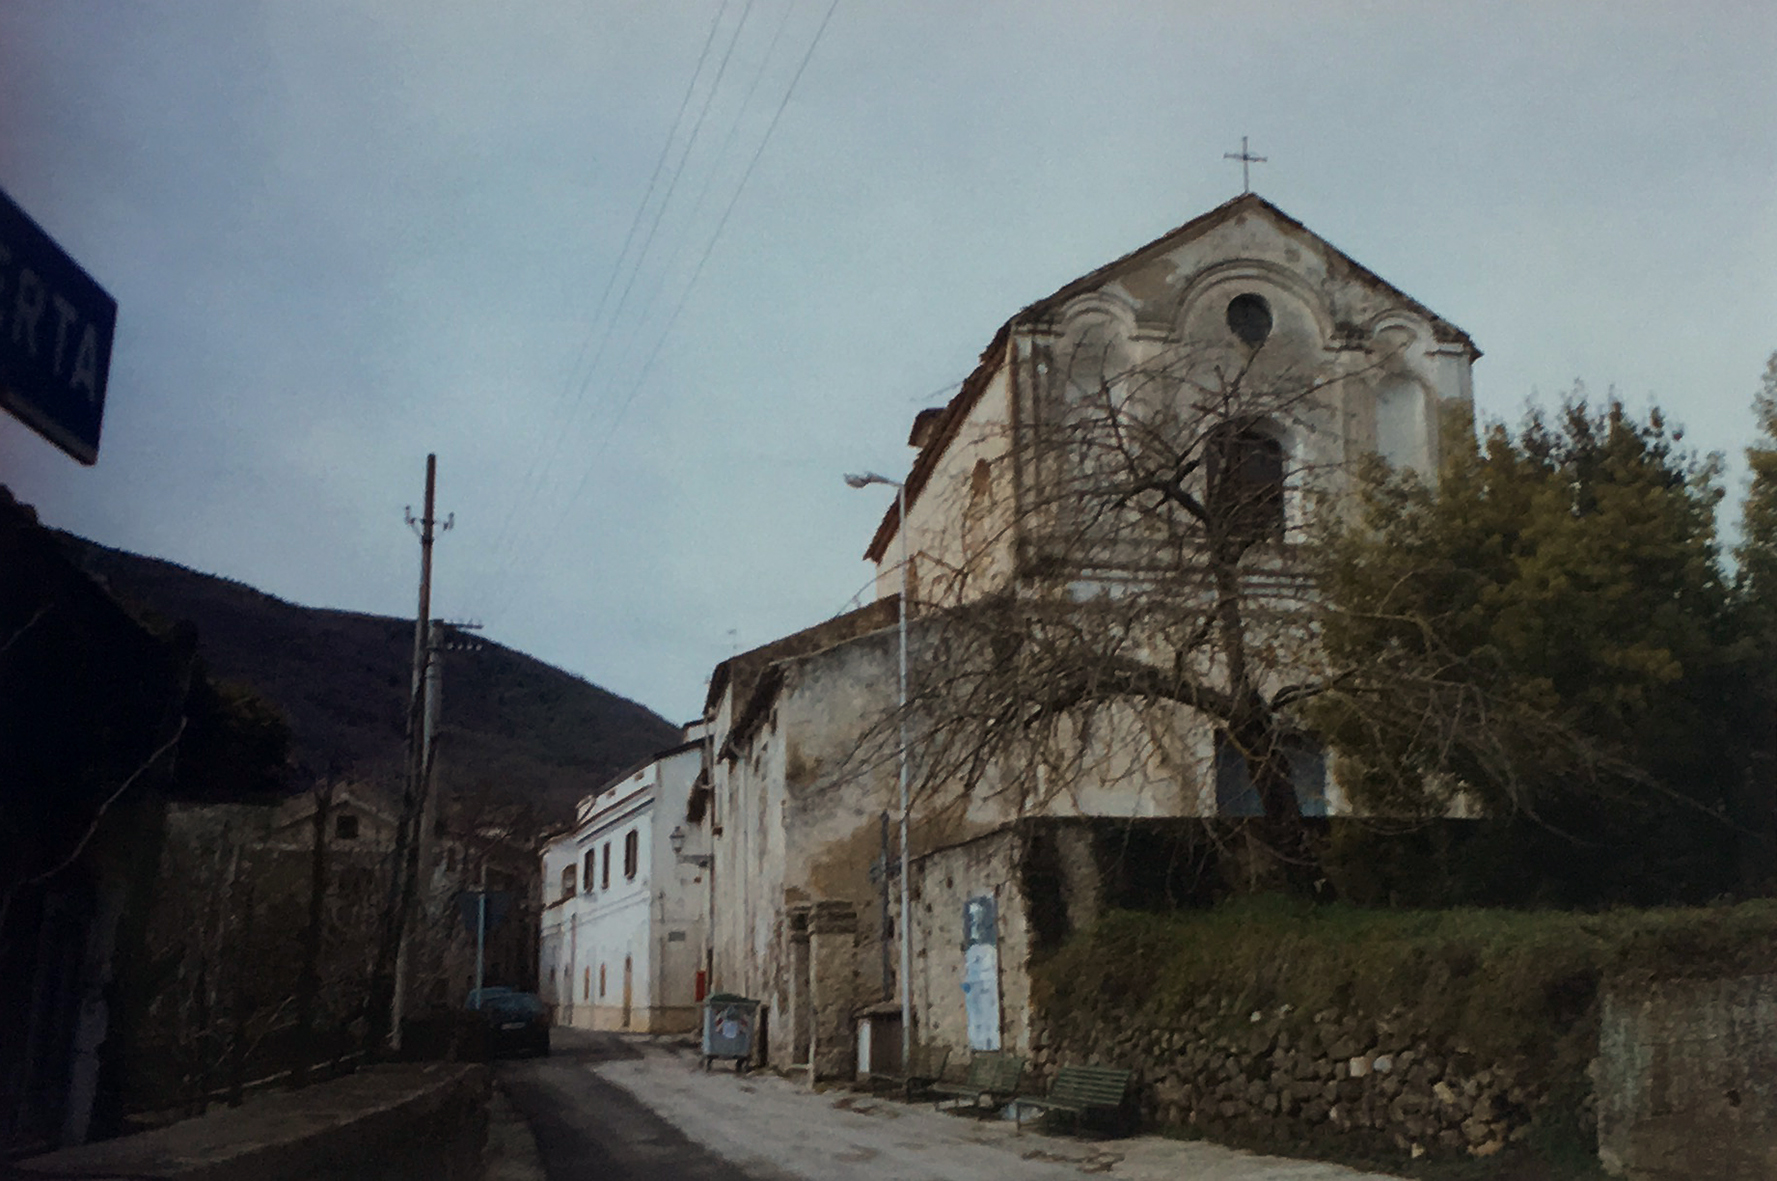 Chiesa di tuttu i Santi (chiesa, parrocchiale) - Formicola (CE) 